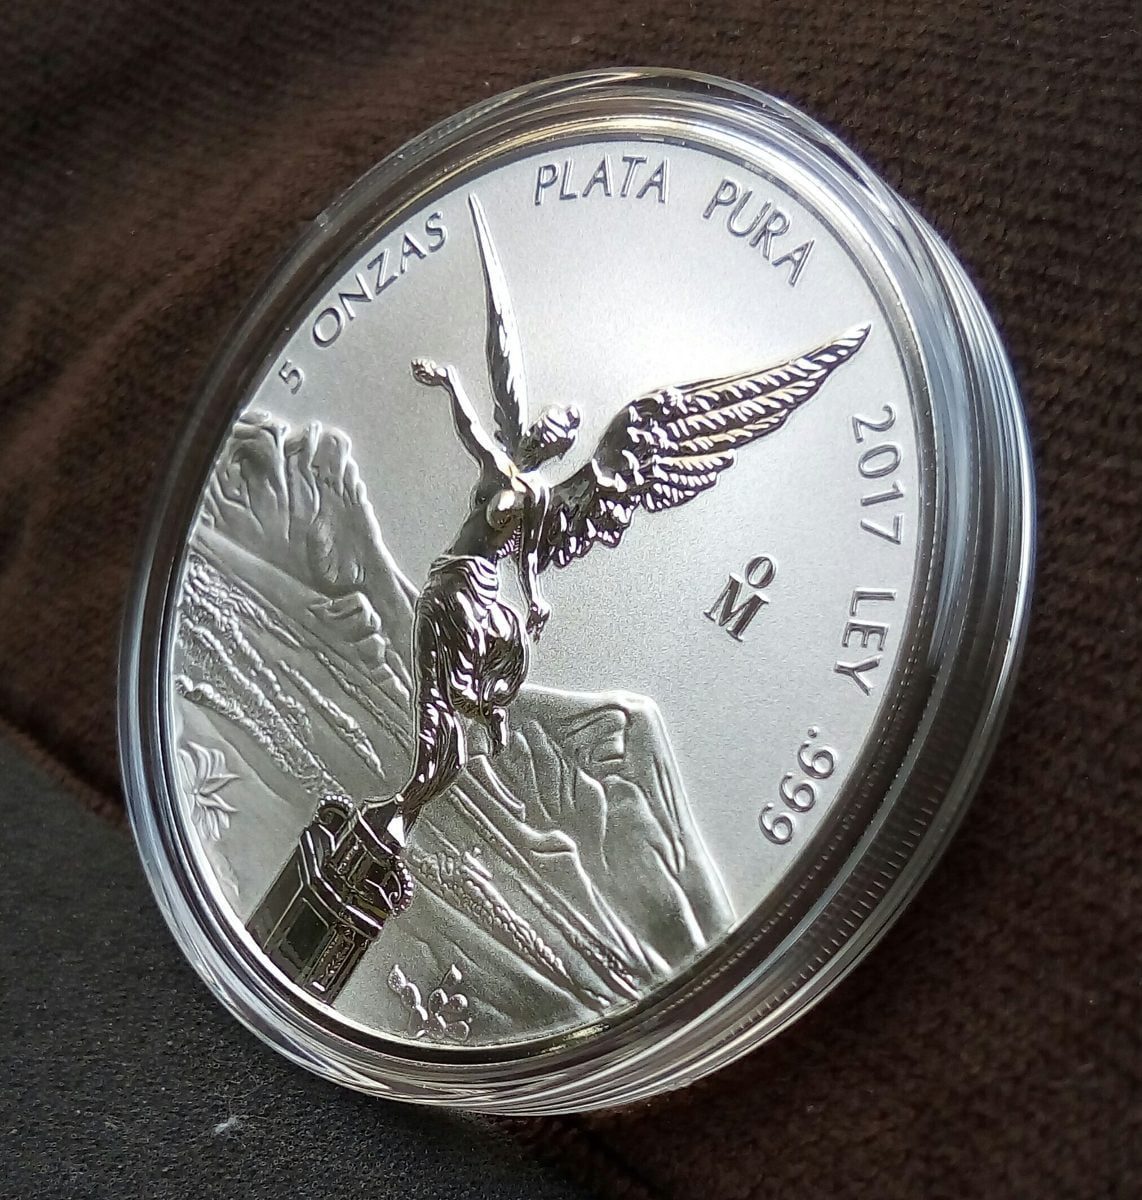 Revitaliza el brillo de tus monedas de plata con técnicas profesionales: disfruta de una limpieza impecable